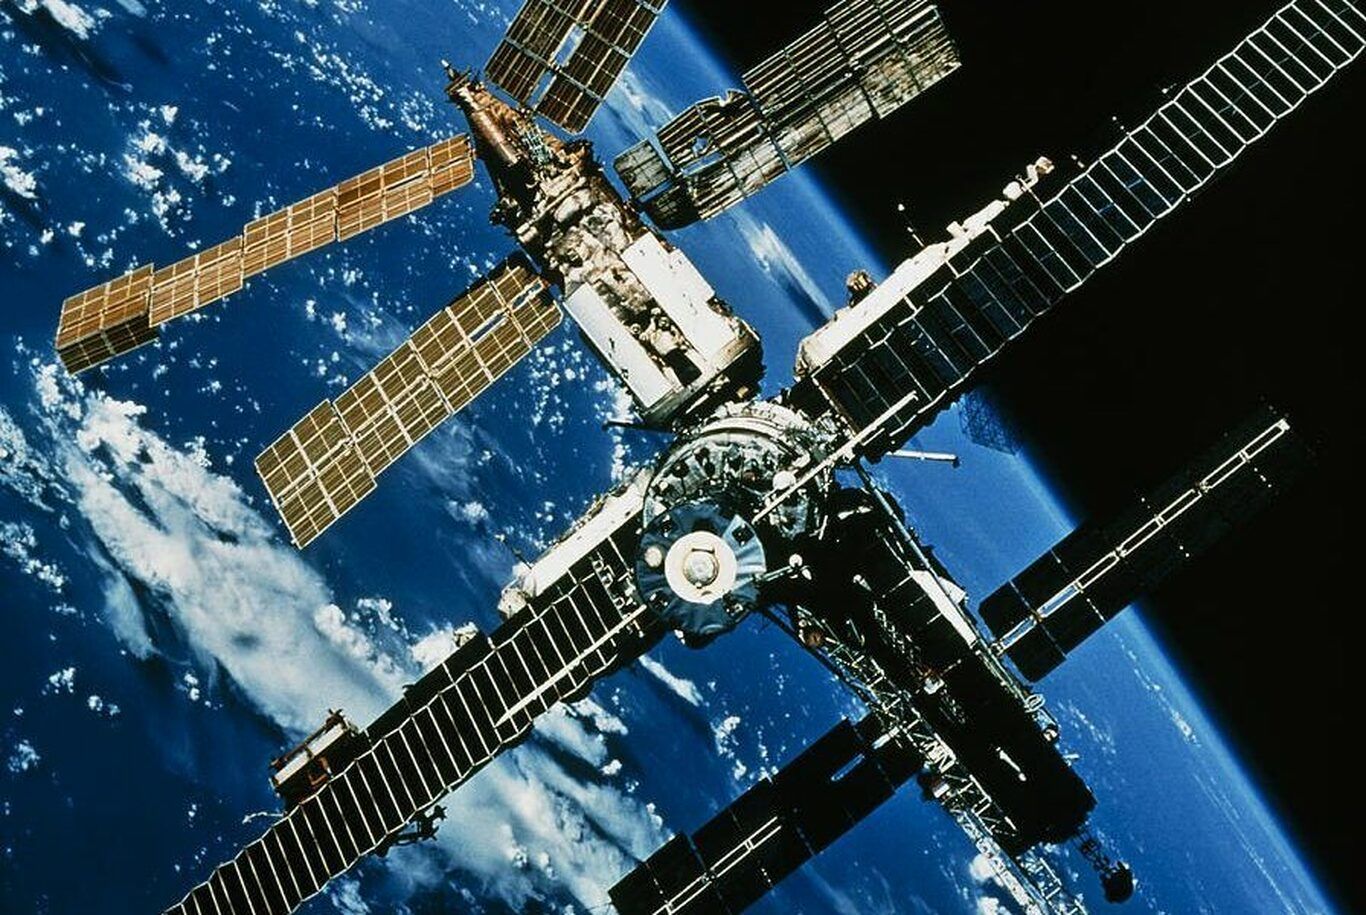 امروز در فضا: ایستگاه فضایی میر به فضا پرتاب شد